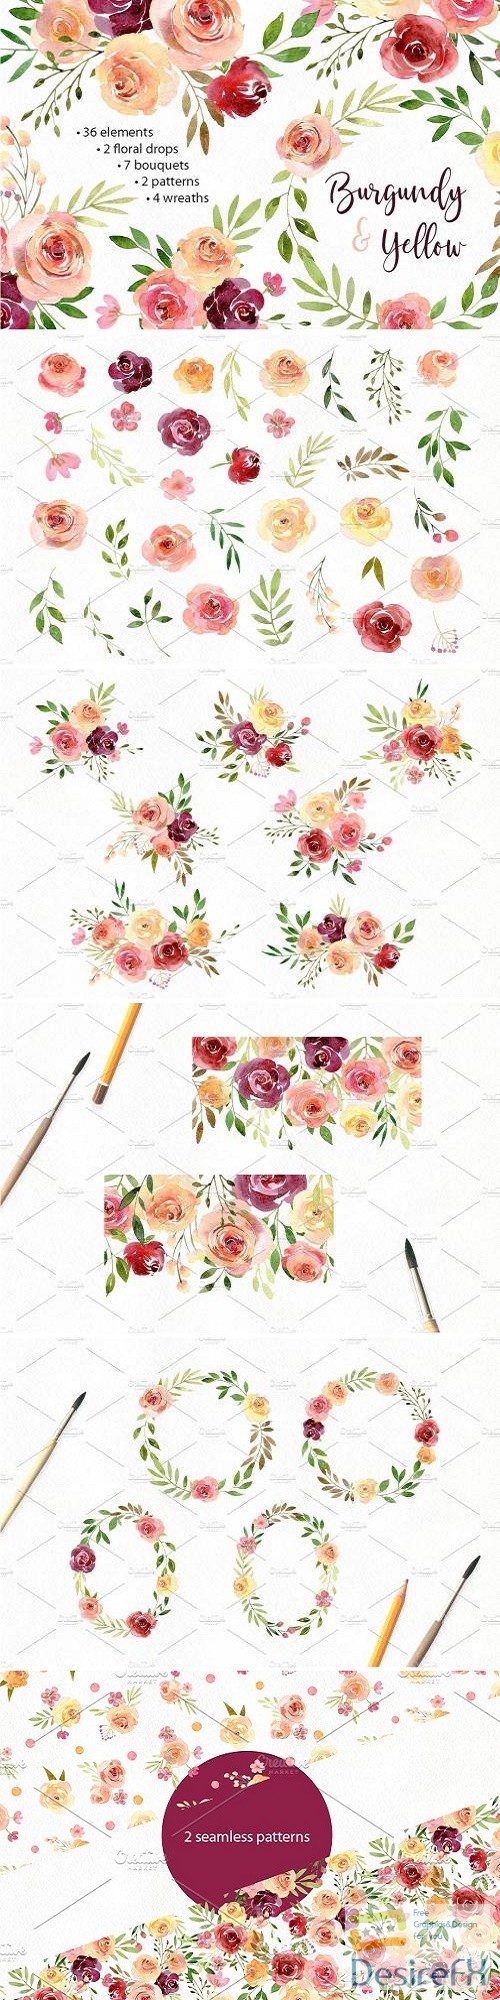 Watercolor Flowers Arrangements PNG - 2583222